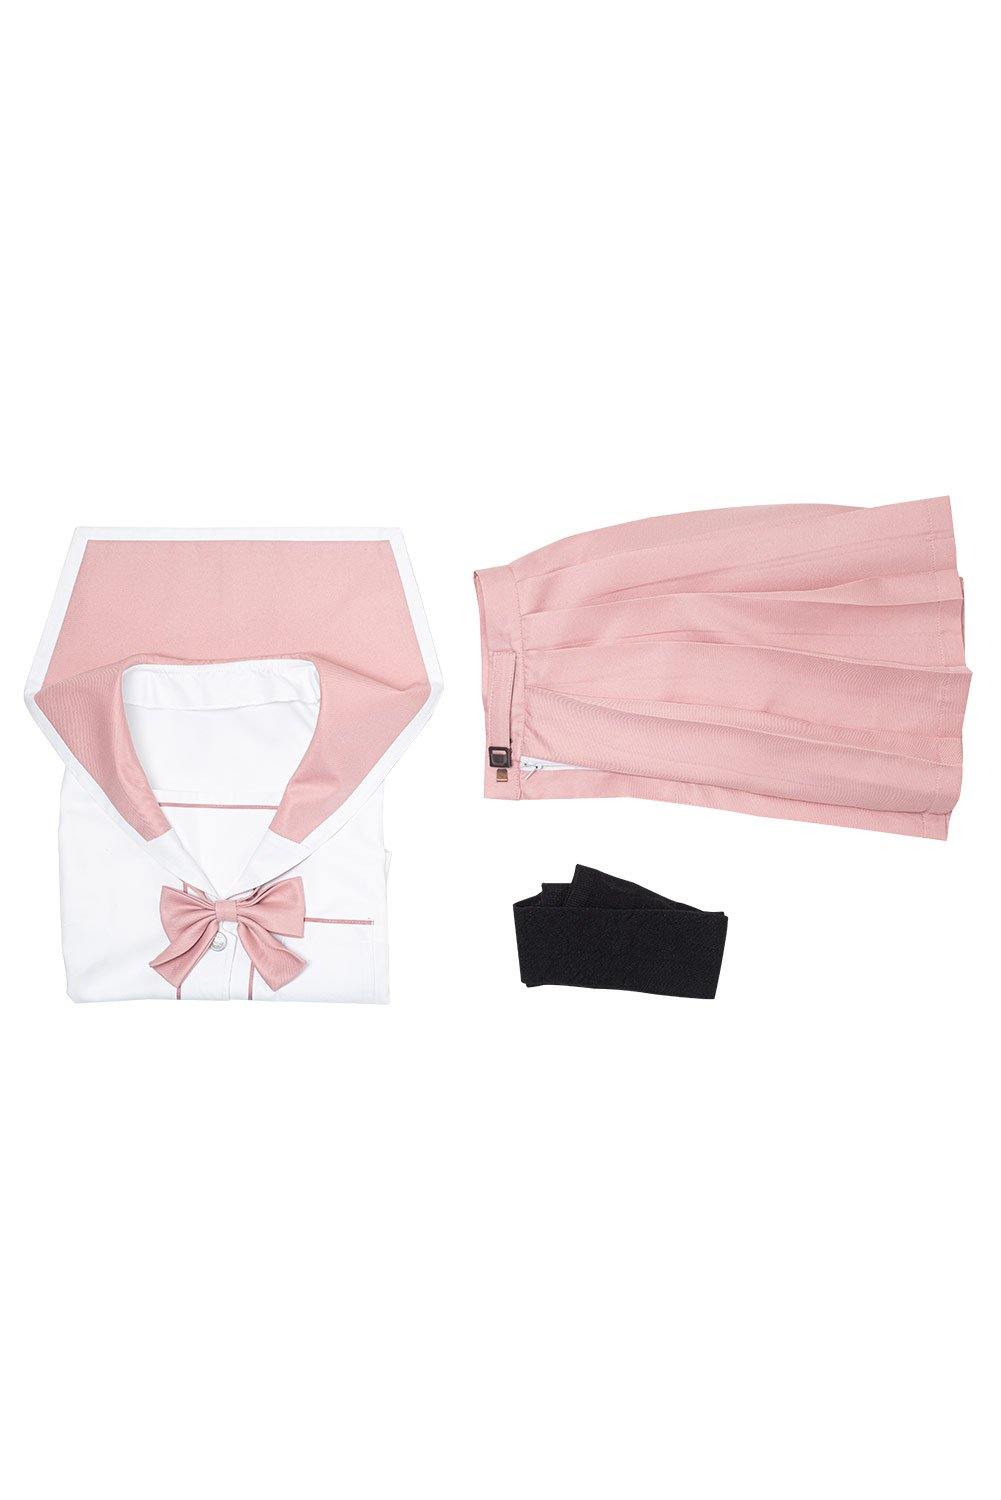 JK Damen Mädchen Schuluniform Cosplay Sommer Kostüm mit rosa Bogen - cosplaycartde